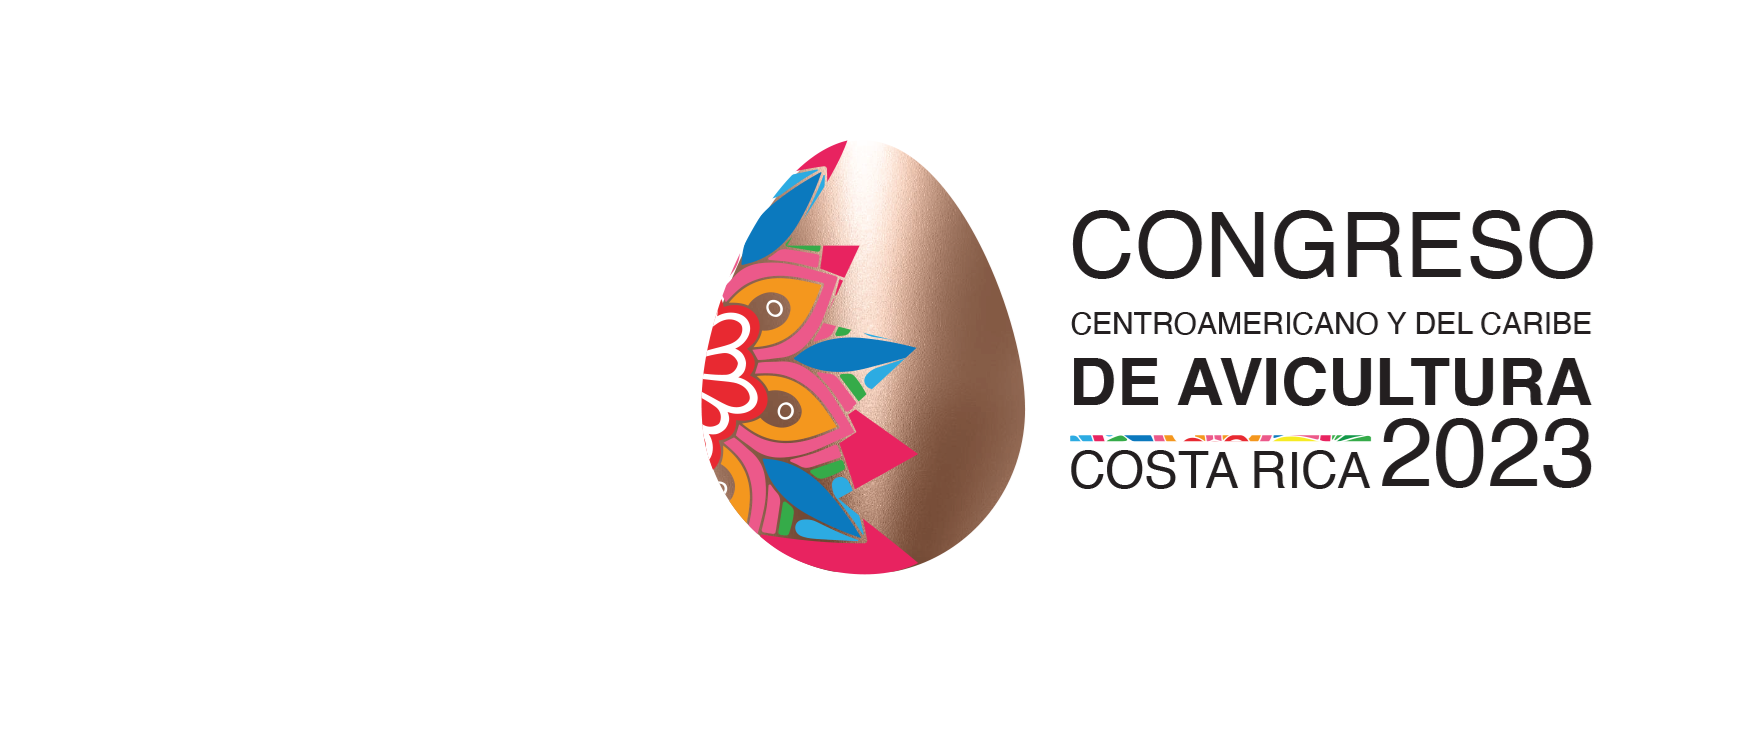 XXVI Congreso Centroamericano y del Caribe de Avicultura 2023